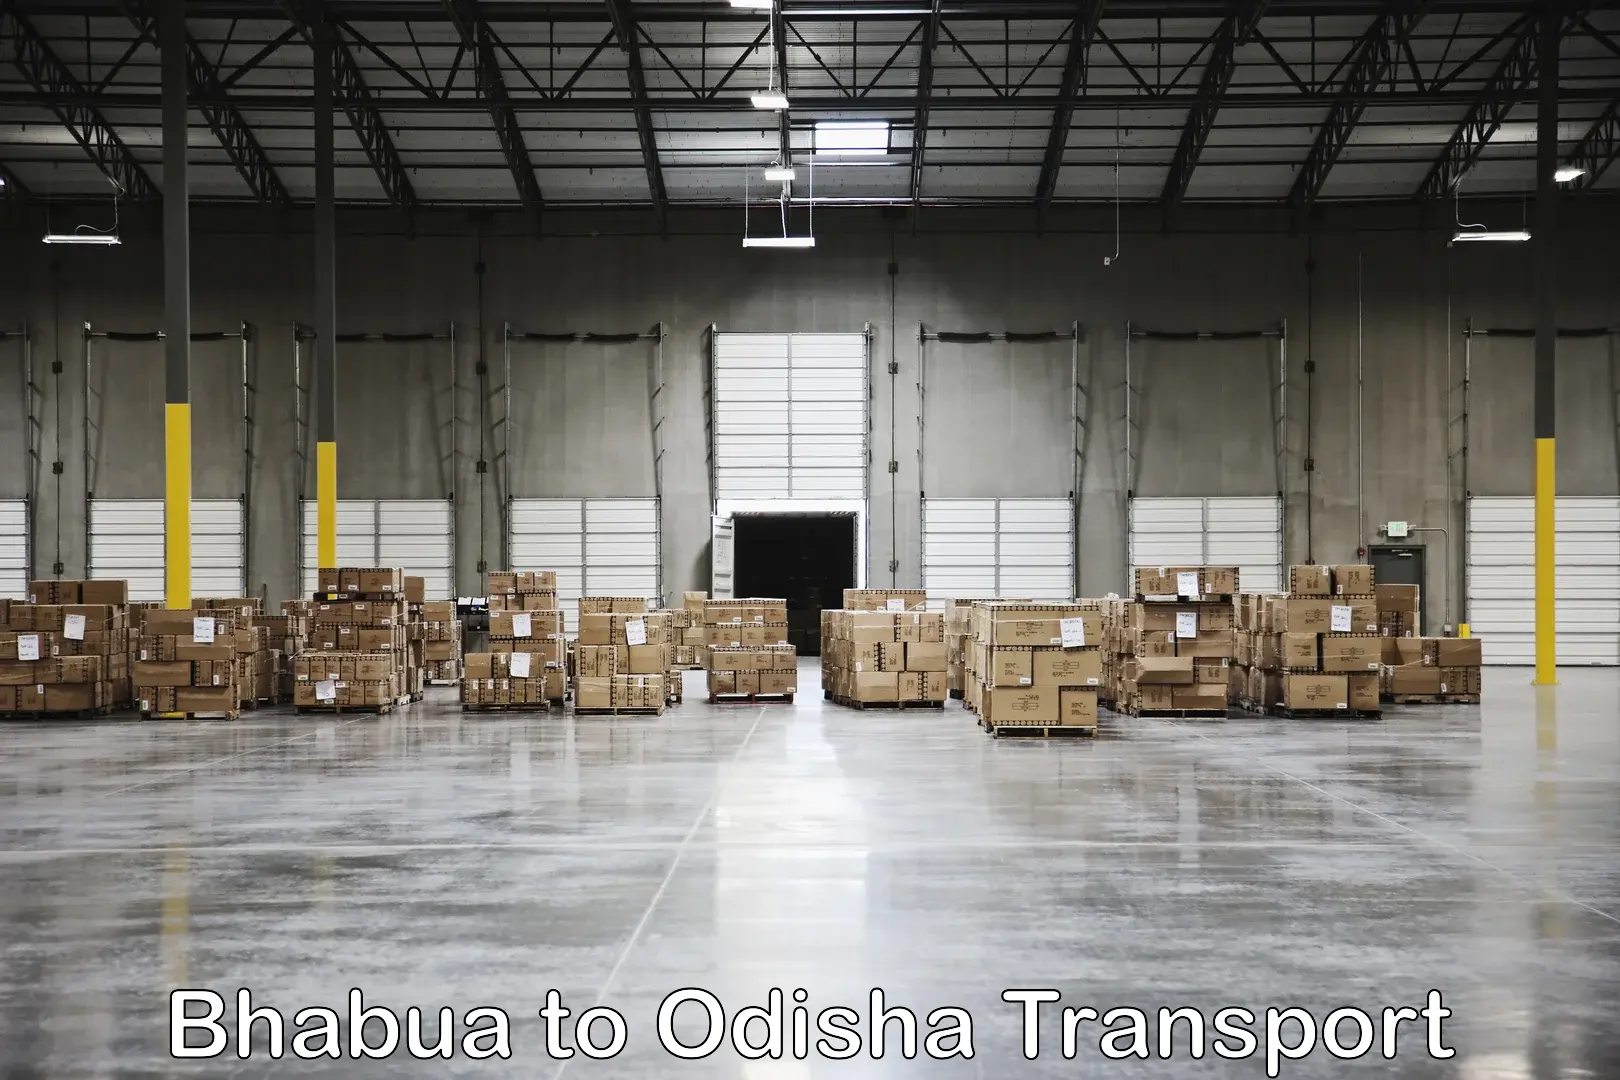 Nearby transport service Bhabua to Polasara